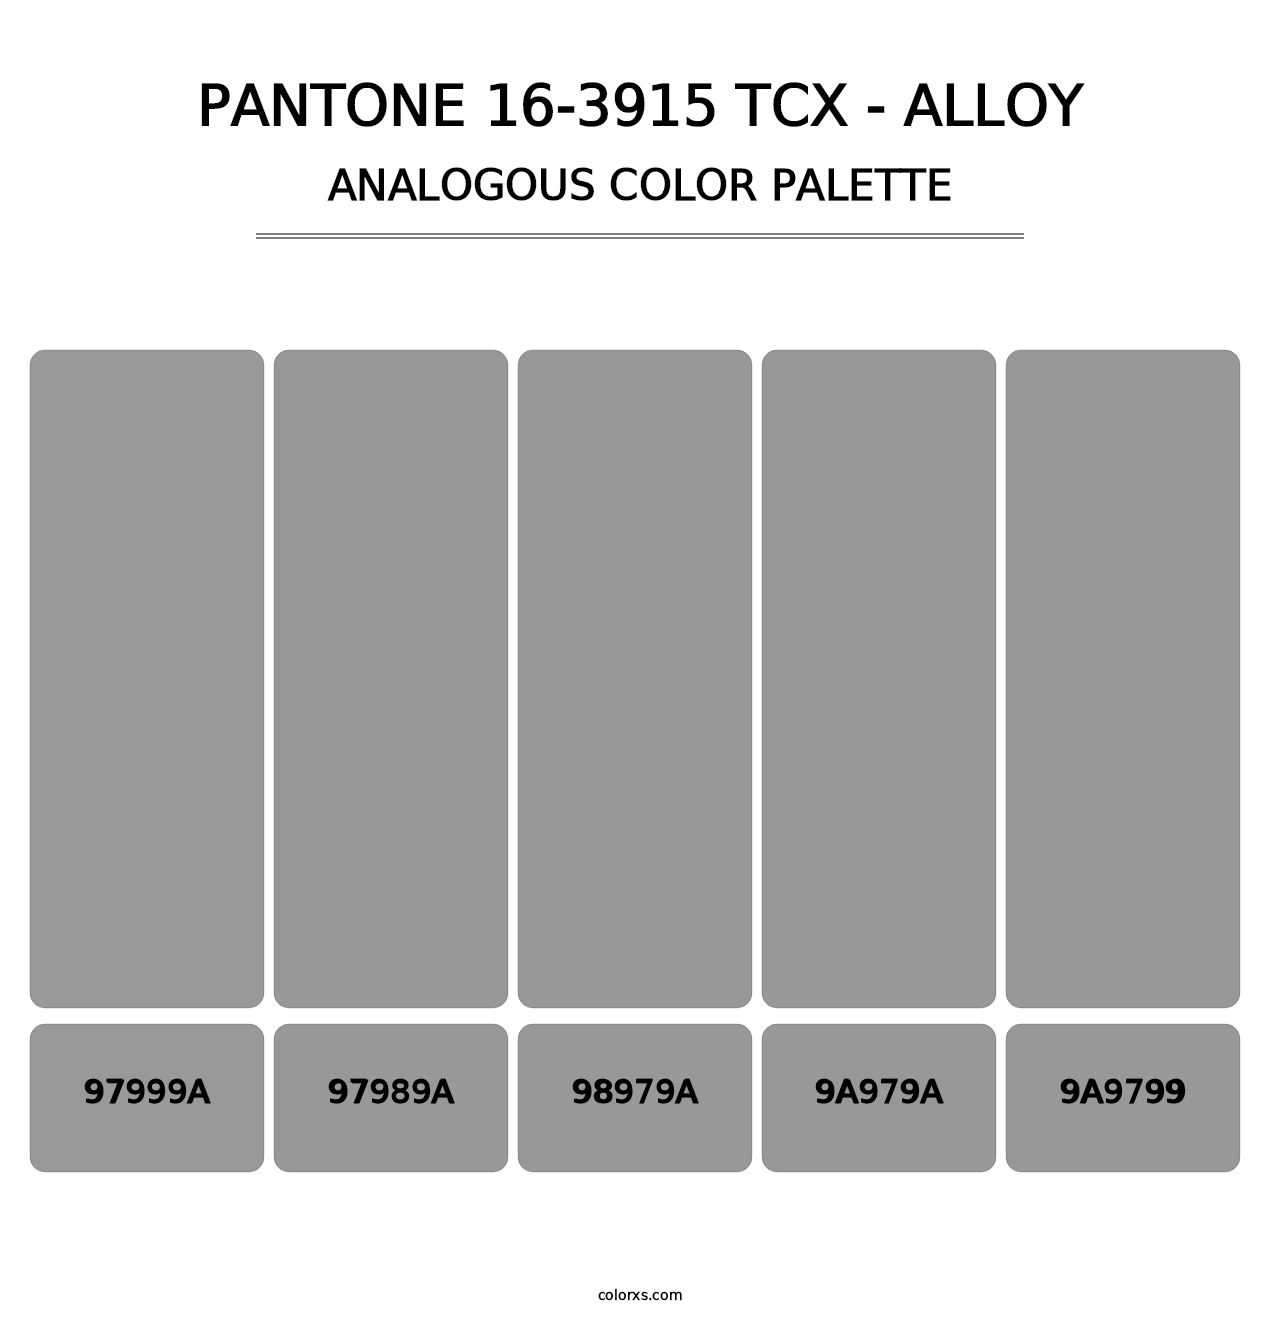 PANTONE 16-3915 TCX - Alloy - Analogous Color Palette